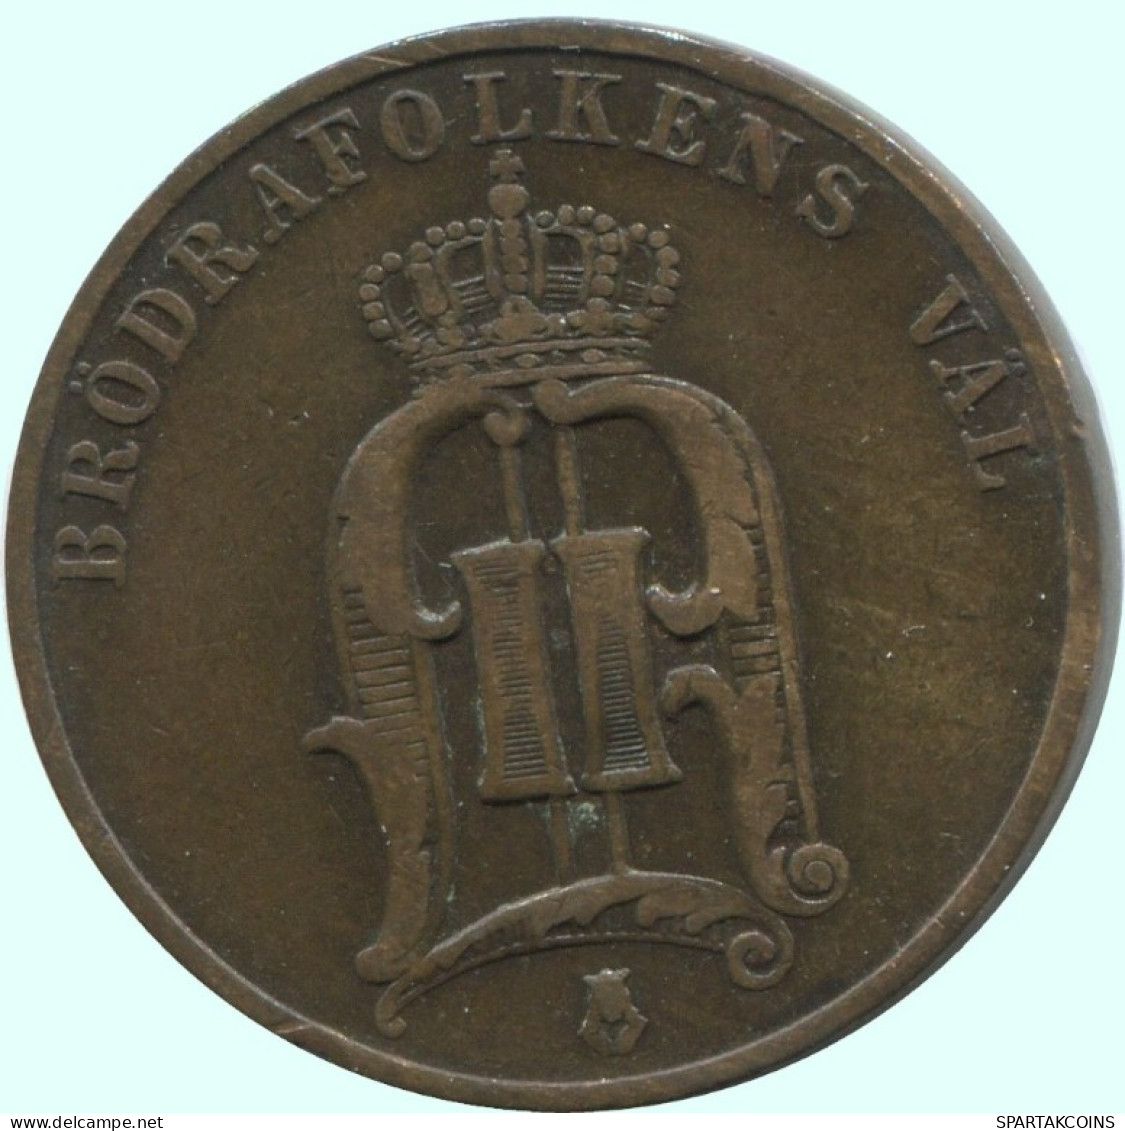 2 ORE 1888 SCHWEDEN SWEDEN Münze #AC909.2.D.A - Schweden